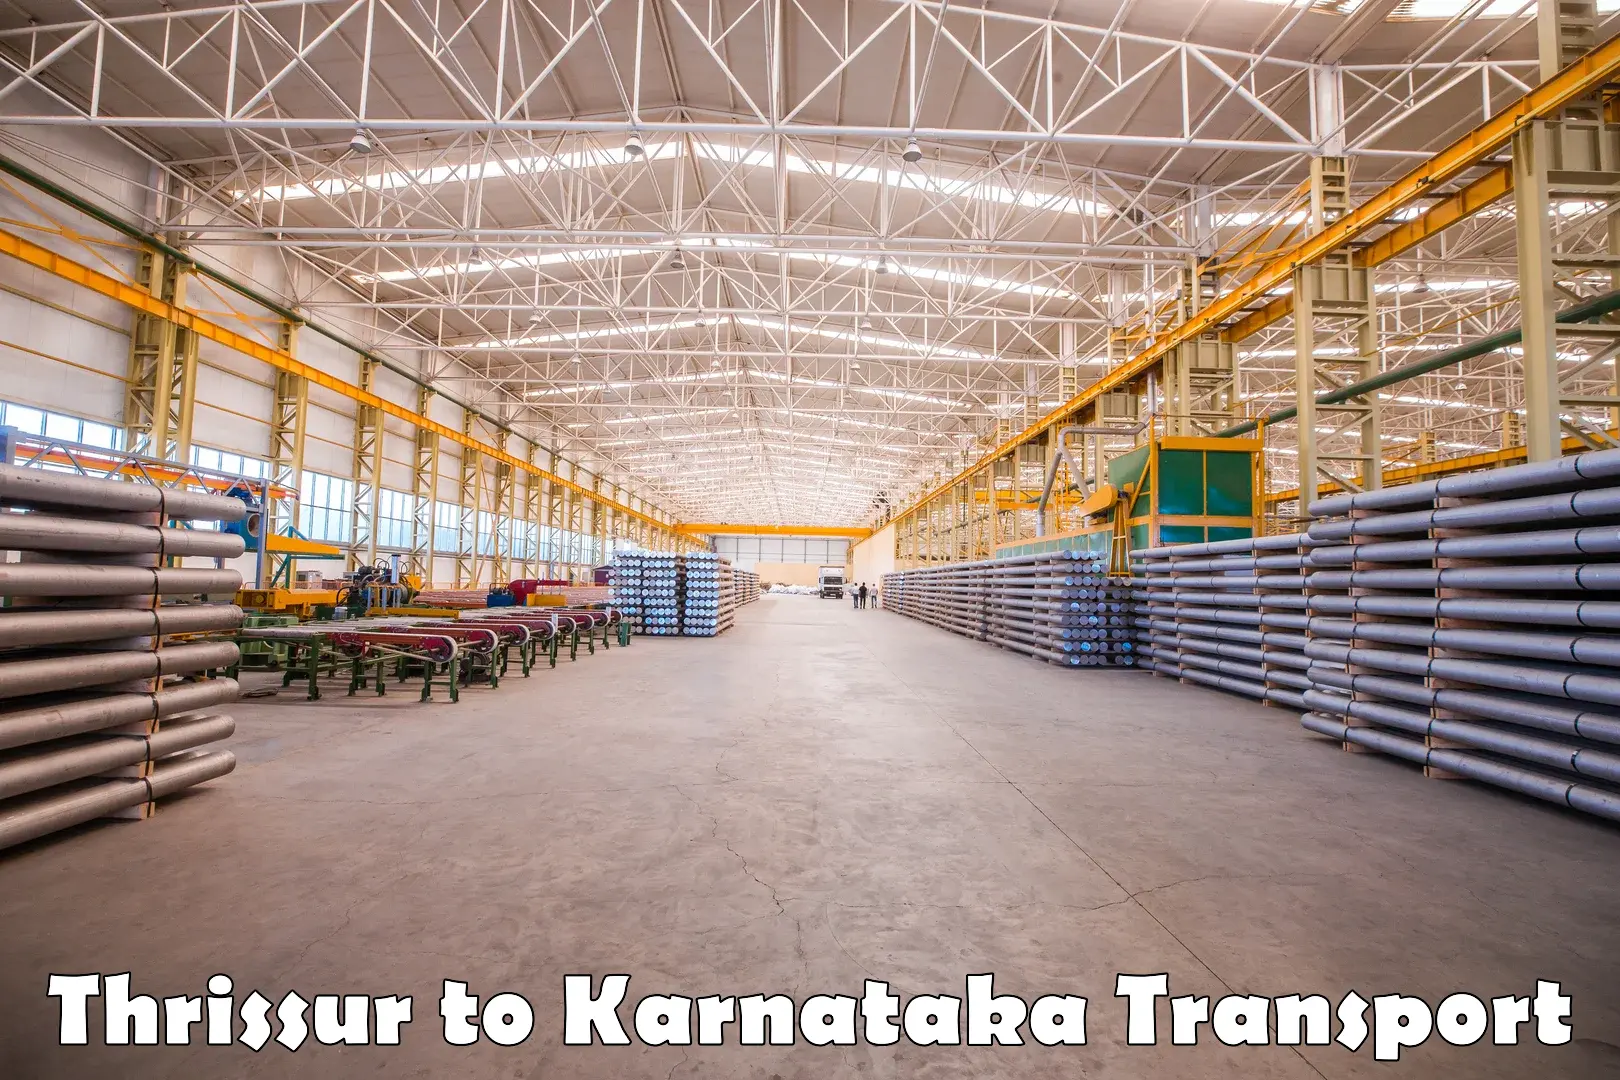 Cargo train transport services Thrissur to Karnataka